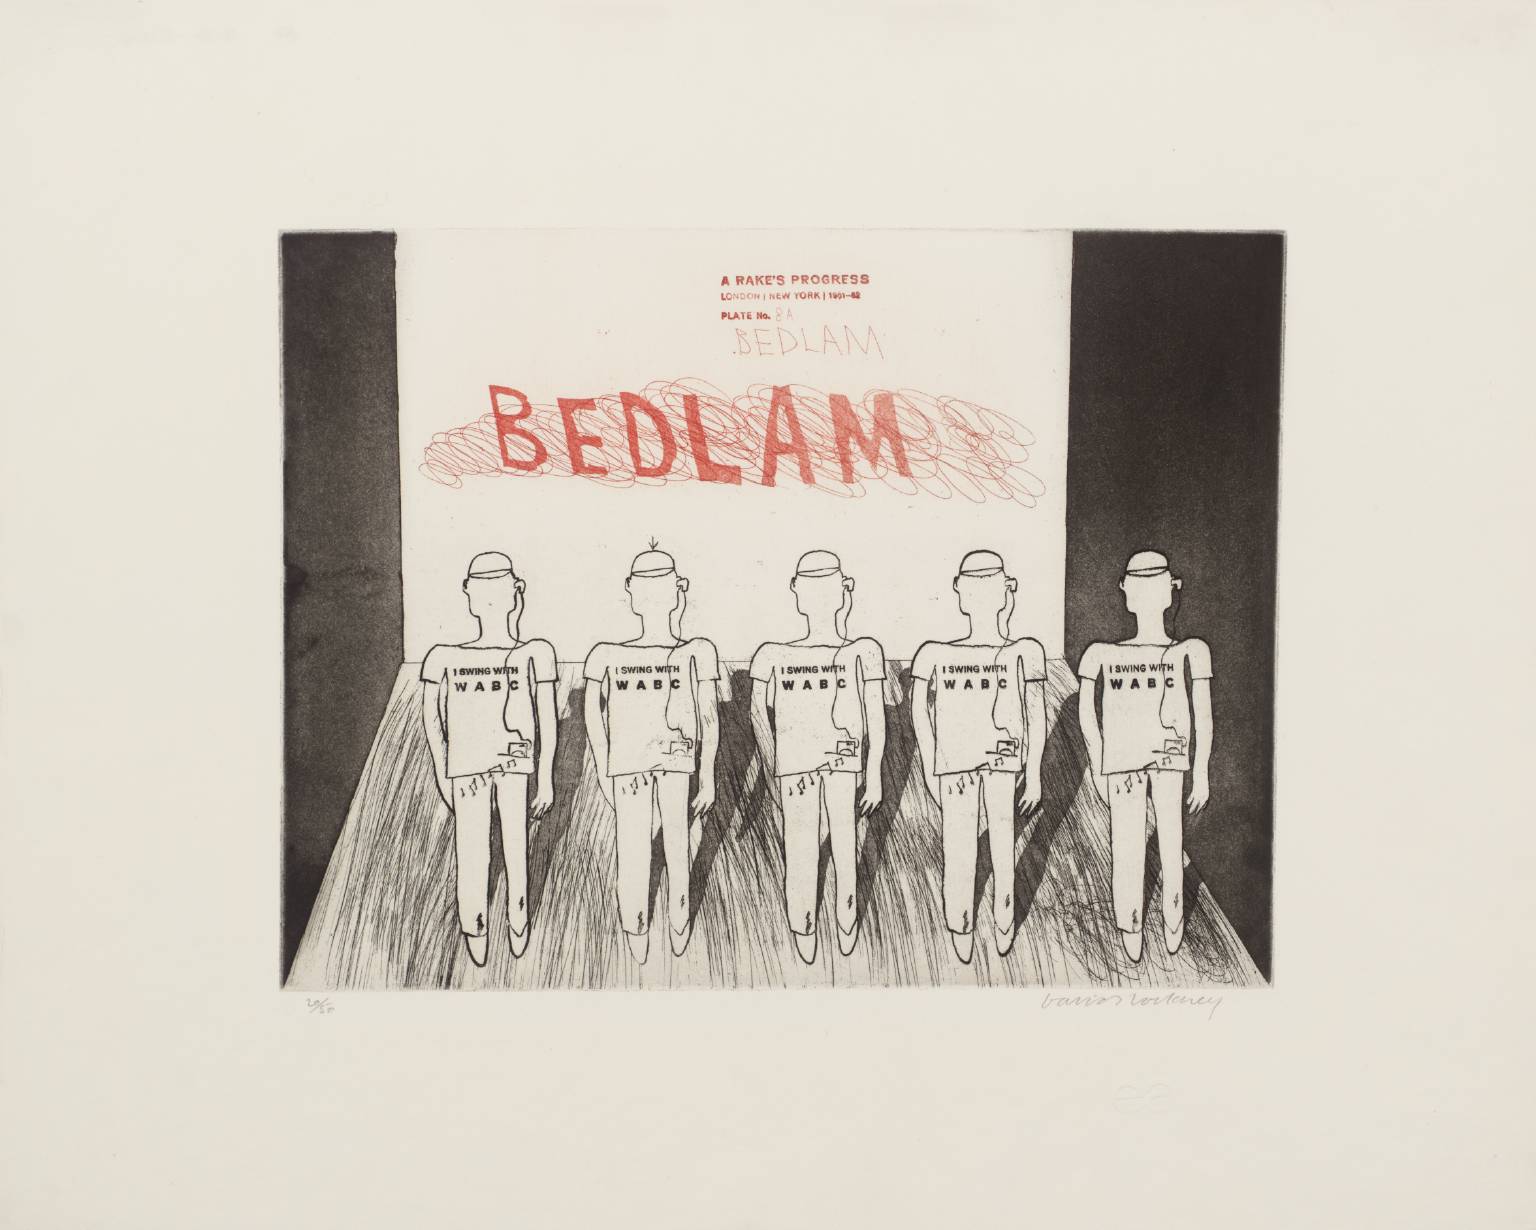 David Hockney, “Bedlam” From A Rake’s Progress, 1961-63 - Etching Edition of 50.jpg